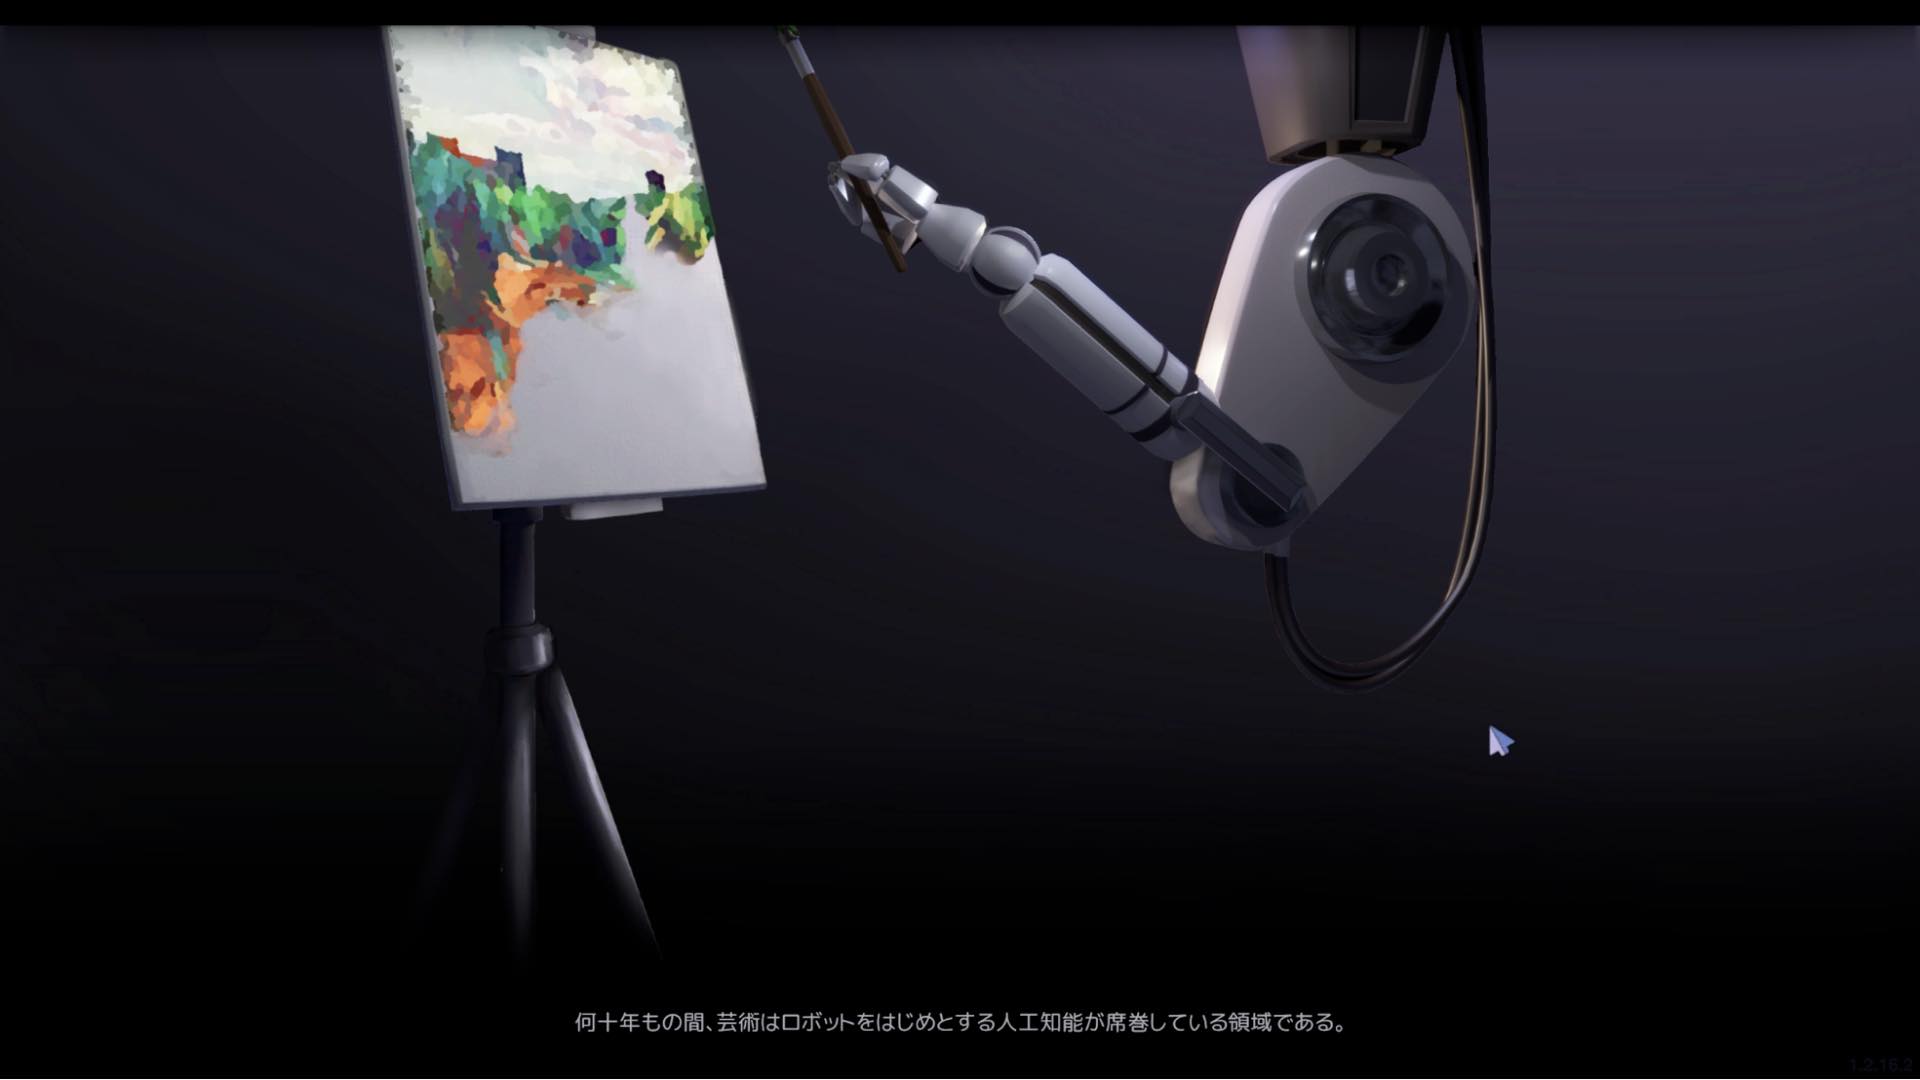 ほんとに絵を描いてお金を稼ぐアーティストシミュレーション『SuchArt』の無料体験版が日本語対応。AIが美術界をリードするようになった未来で、ただひとりの人間アーティストとして活動する_003